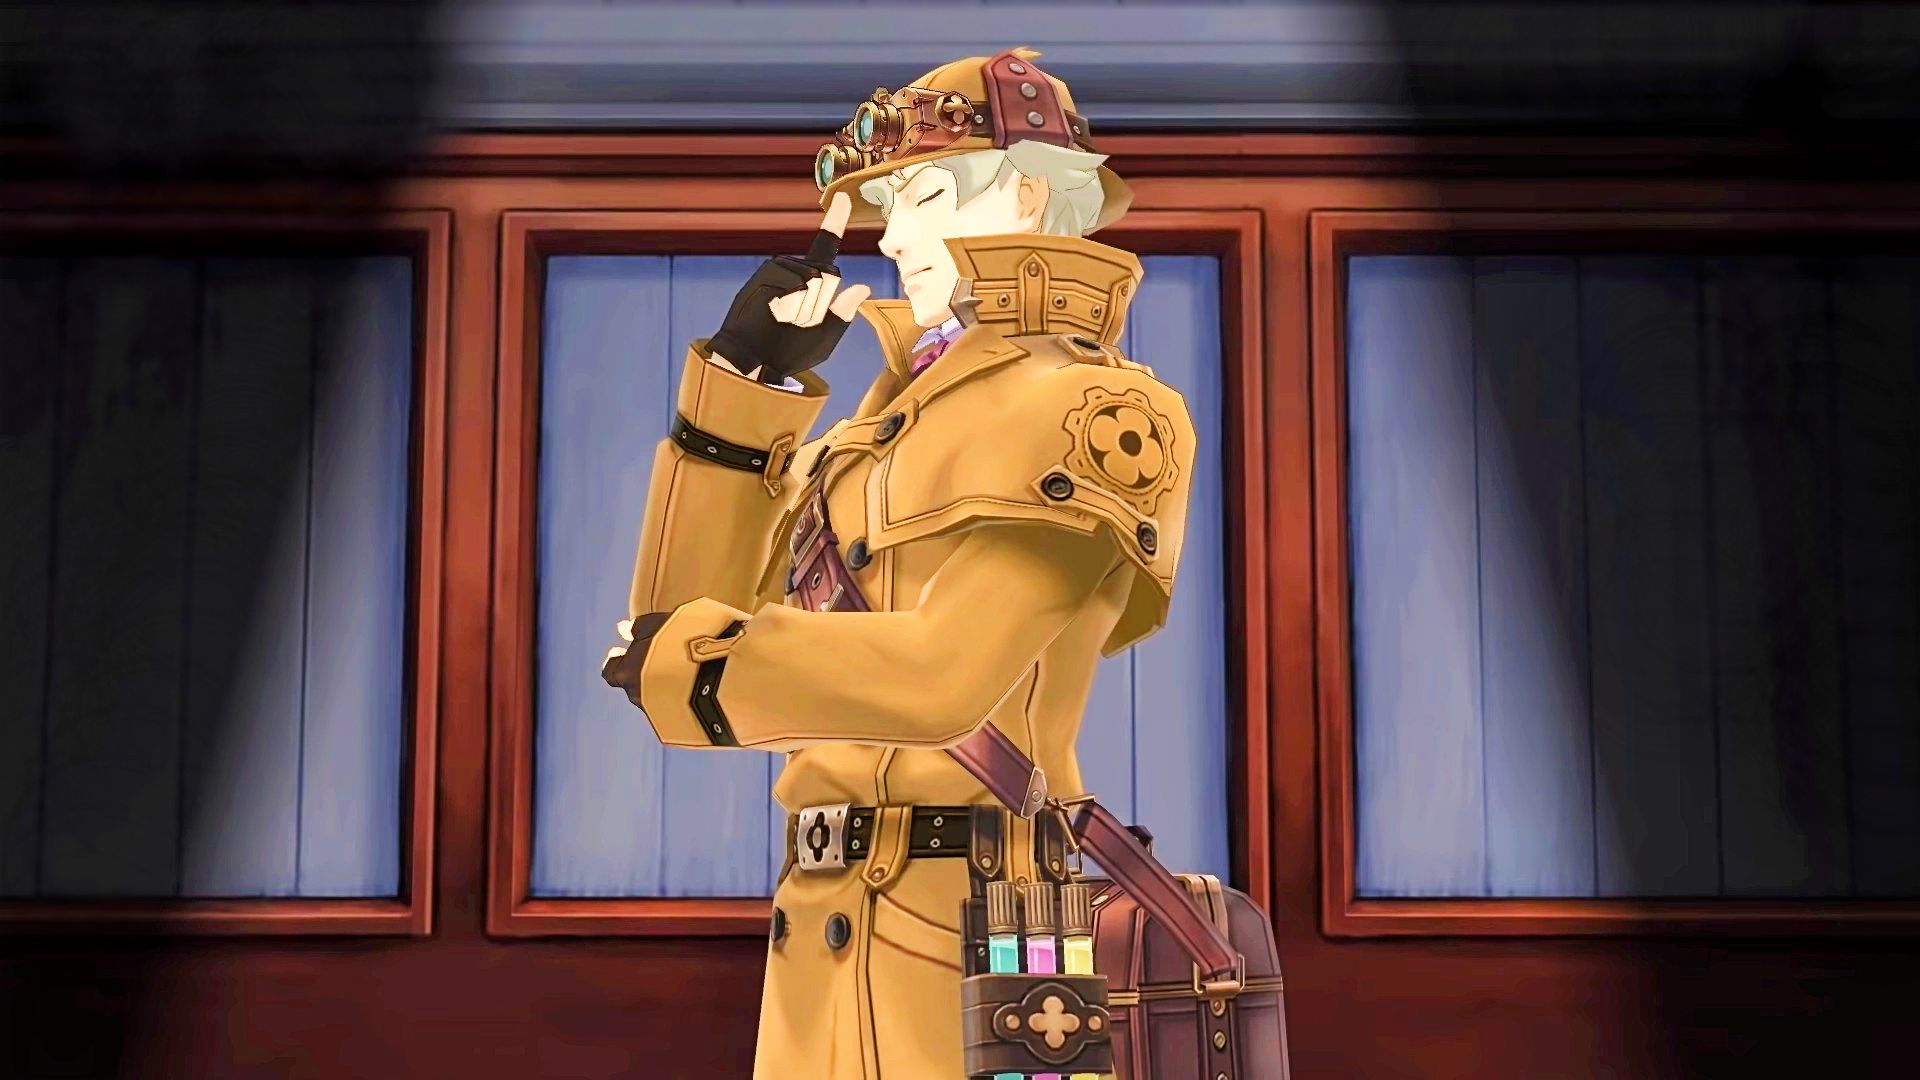 Beste Anime -Spiele: Der große Ass -Anwalt Chroniken. Das Bild zeigt die Figur Herlock Sholmes, eine Parodie von Sherlock Holmes